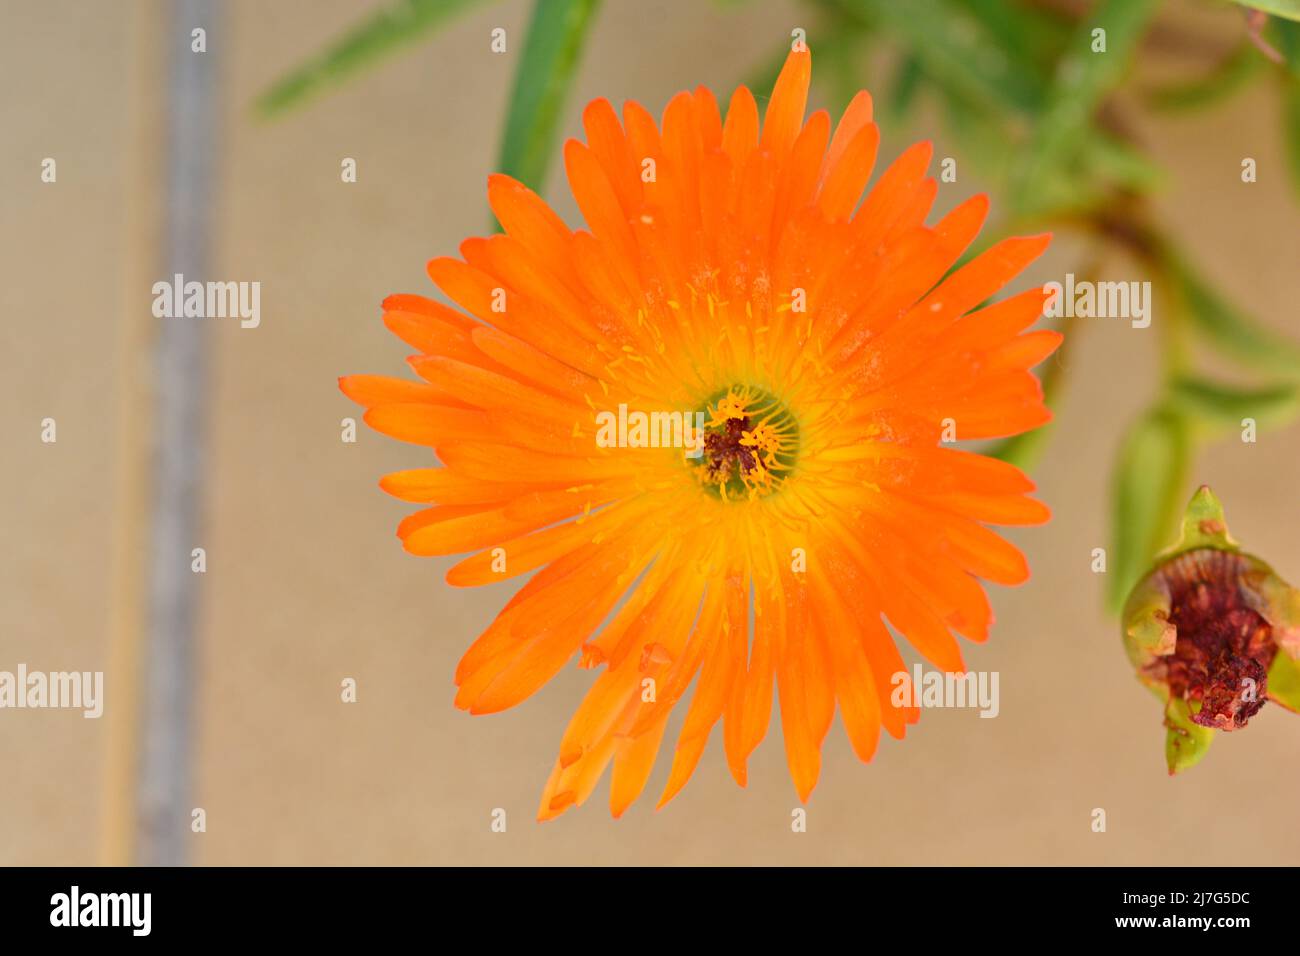 Detalle de una flor de lampranto naranja, Lampranthus aurantiacus, en un jardín en primavera Stock Photo